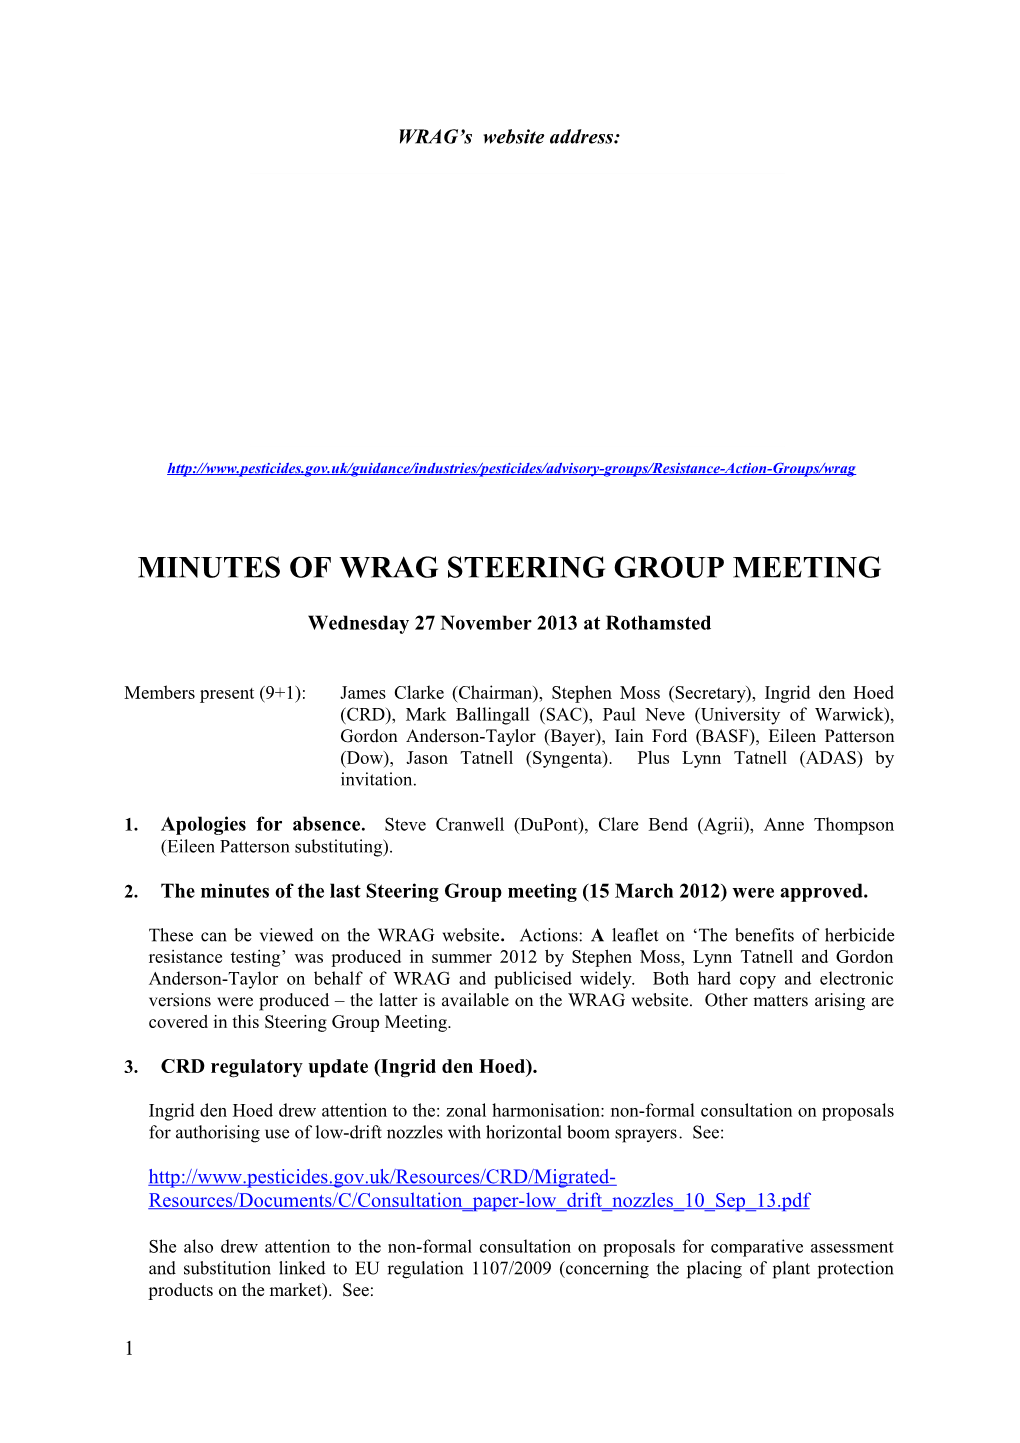 Minutes of Wrag Steering Group Meeting